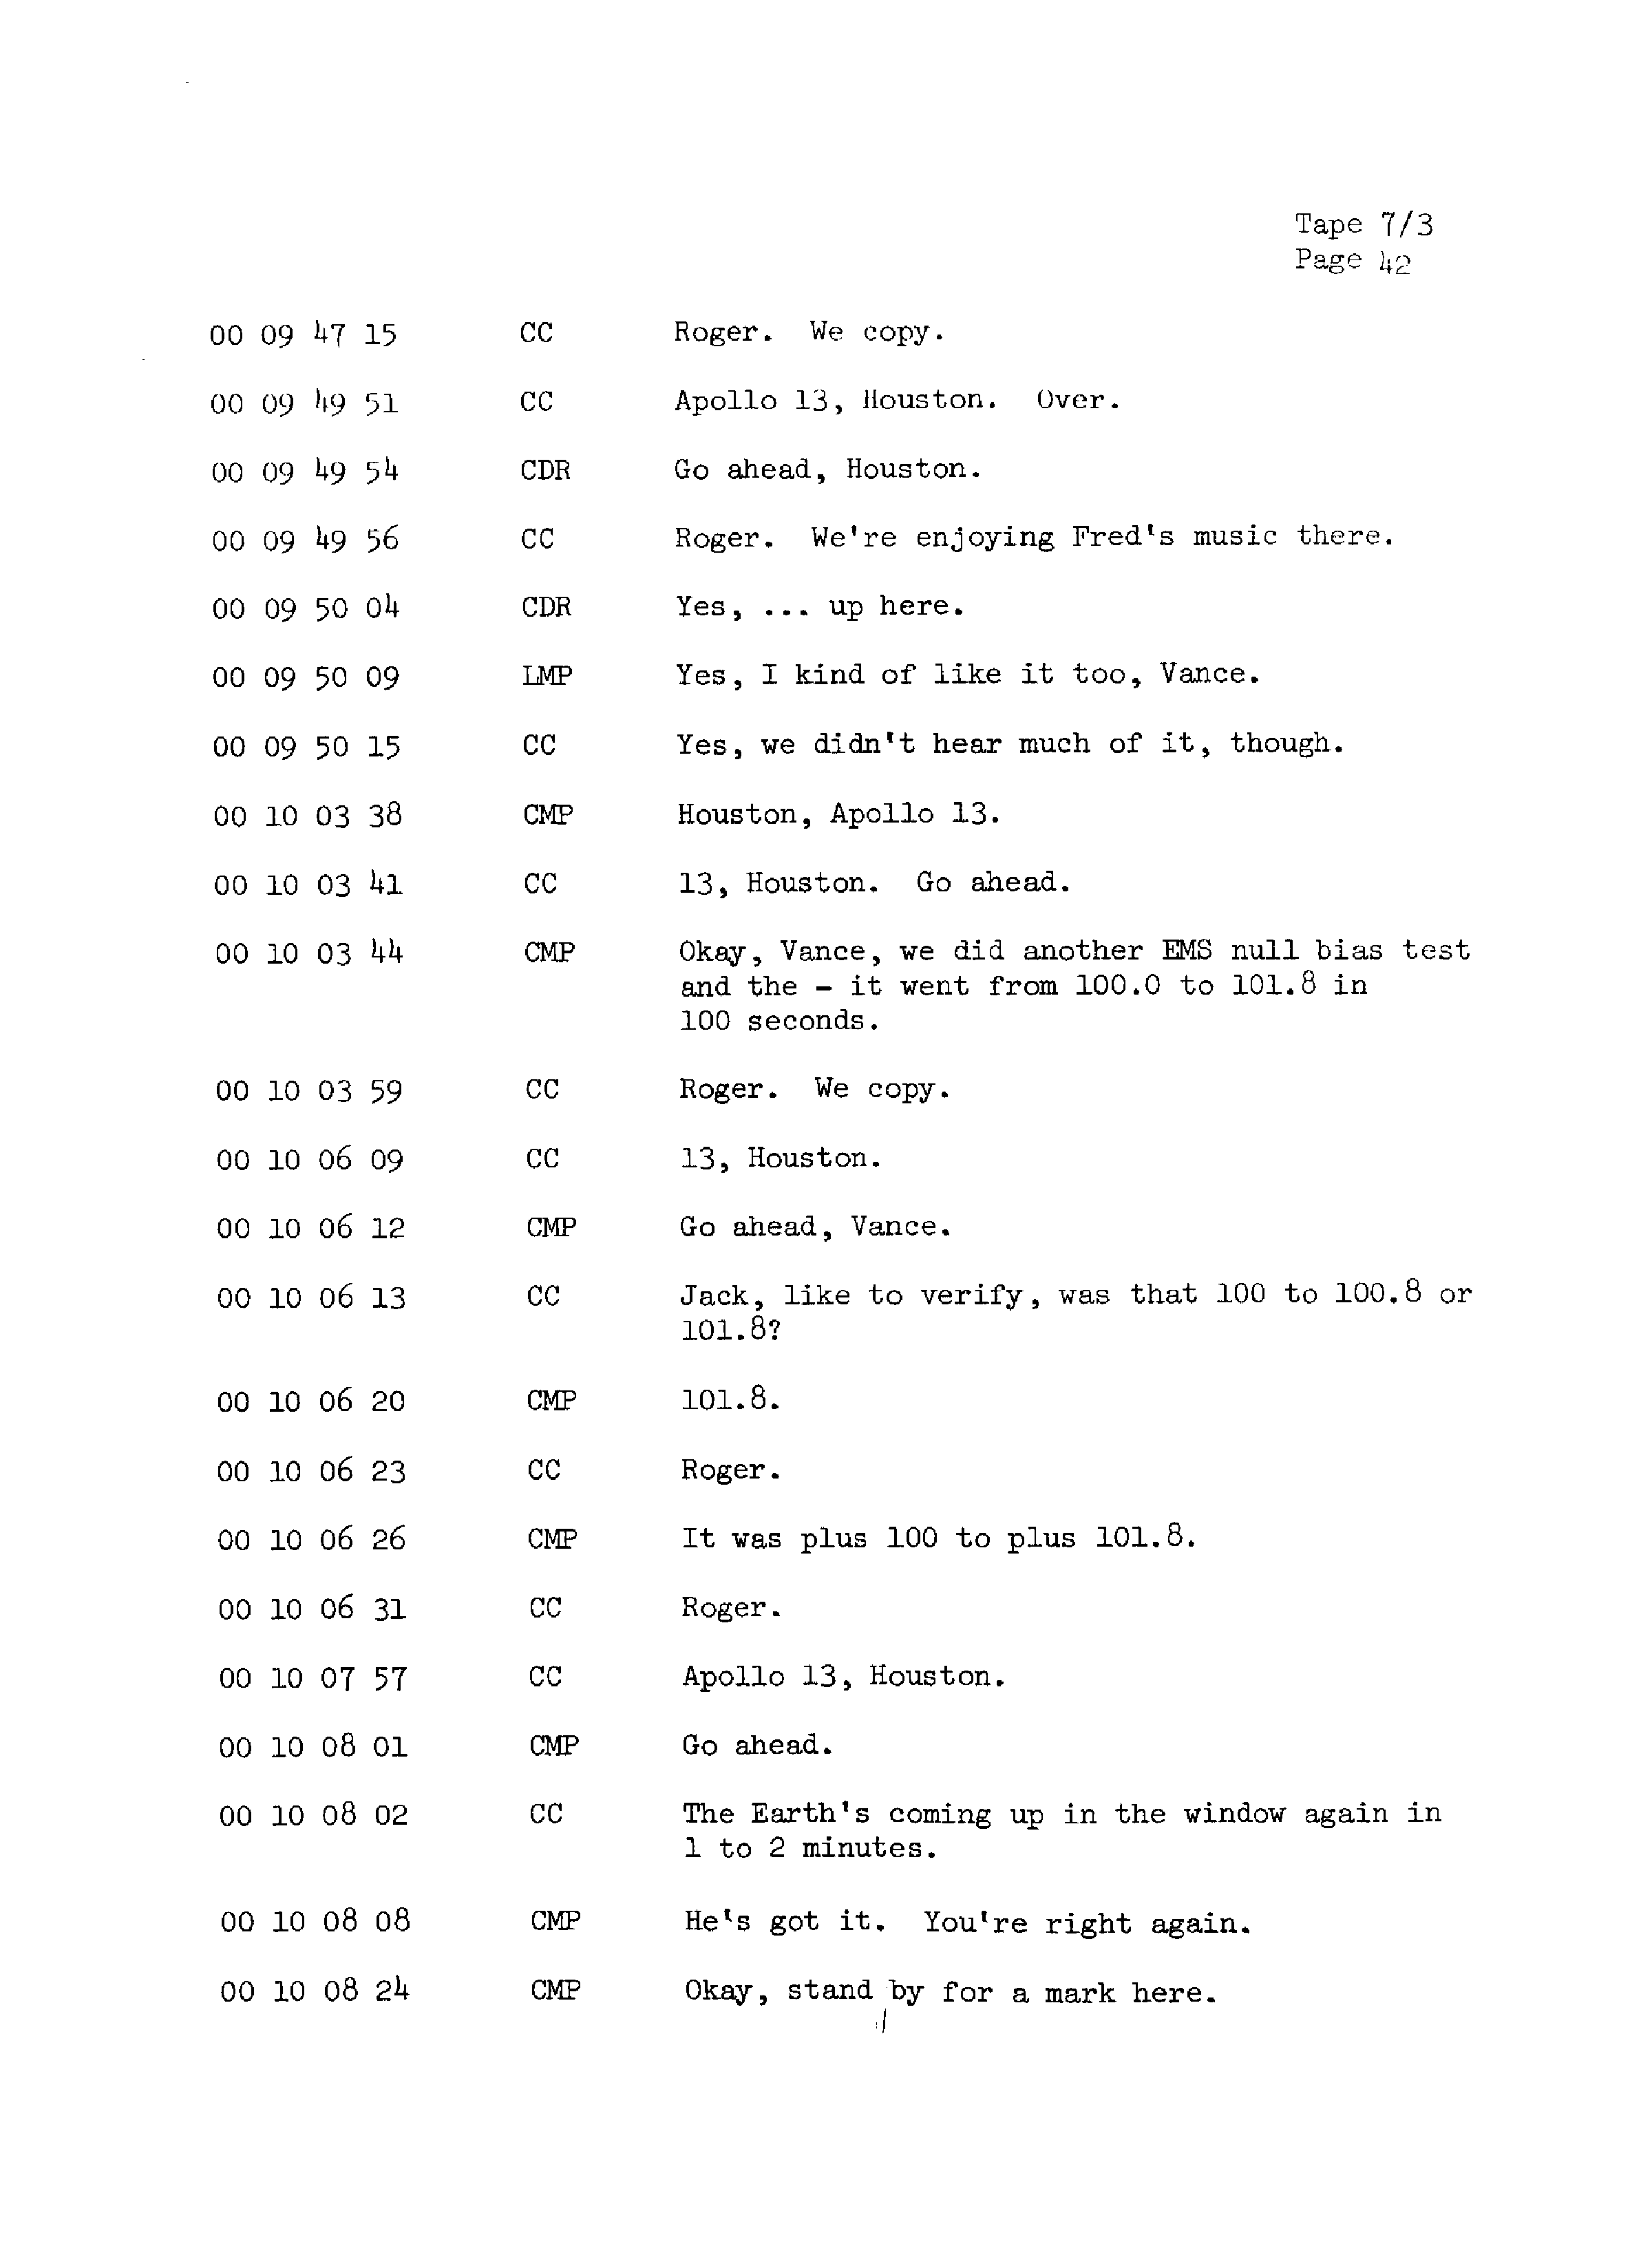 Page 49 of Apollo 13’s original transcript